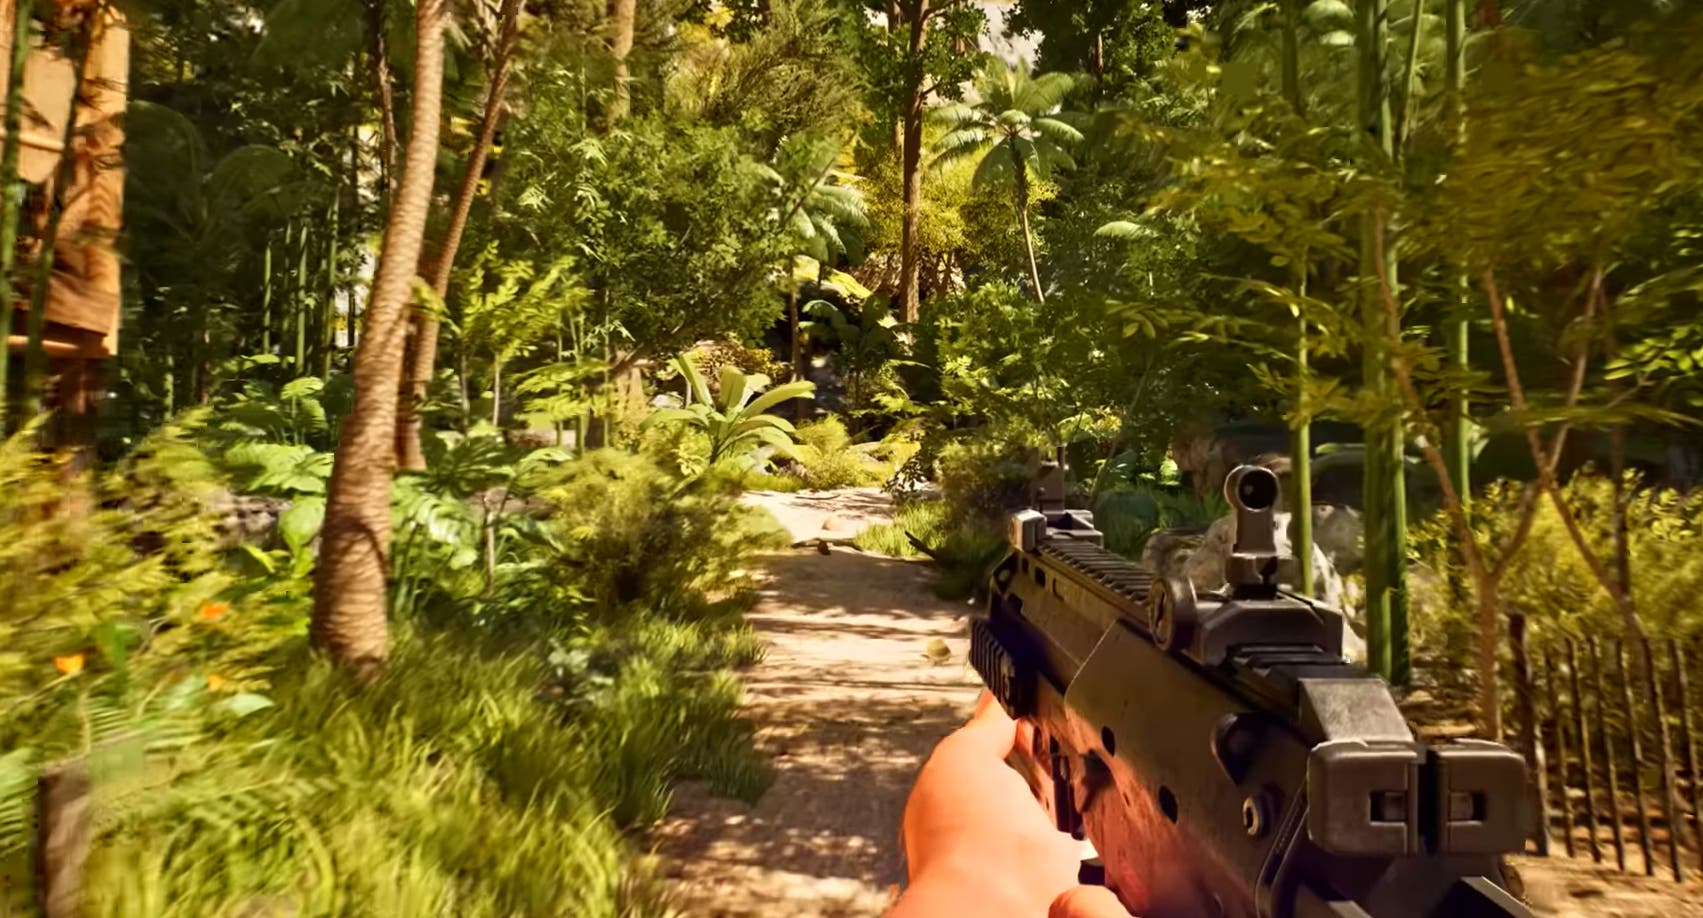 Far Cry 7 será lançado em 2025 com mudanças no motor [rumor]